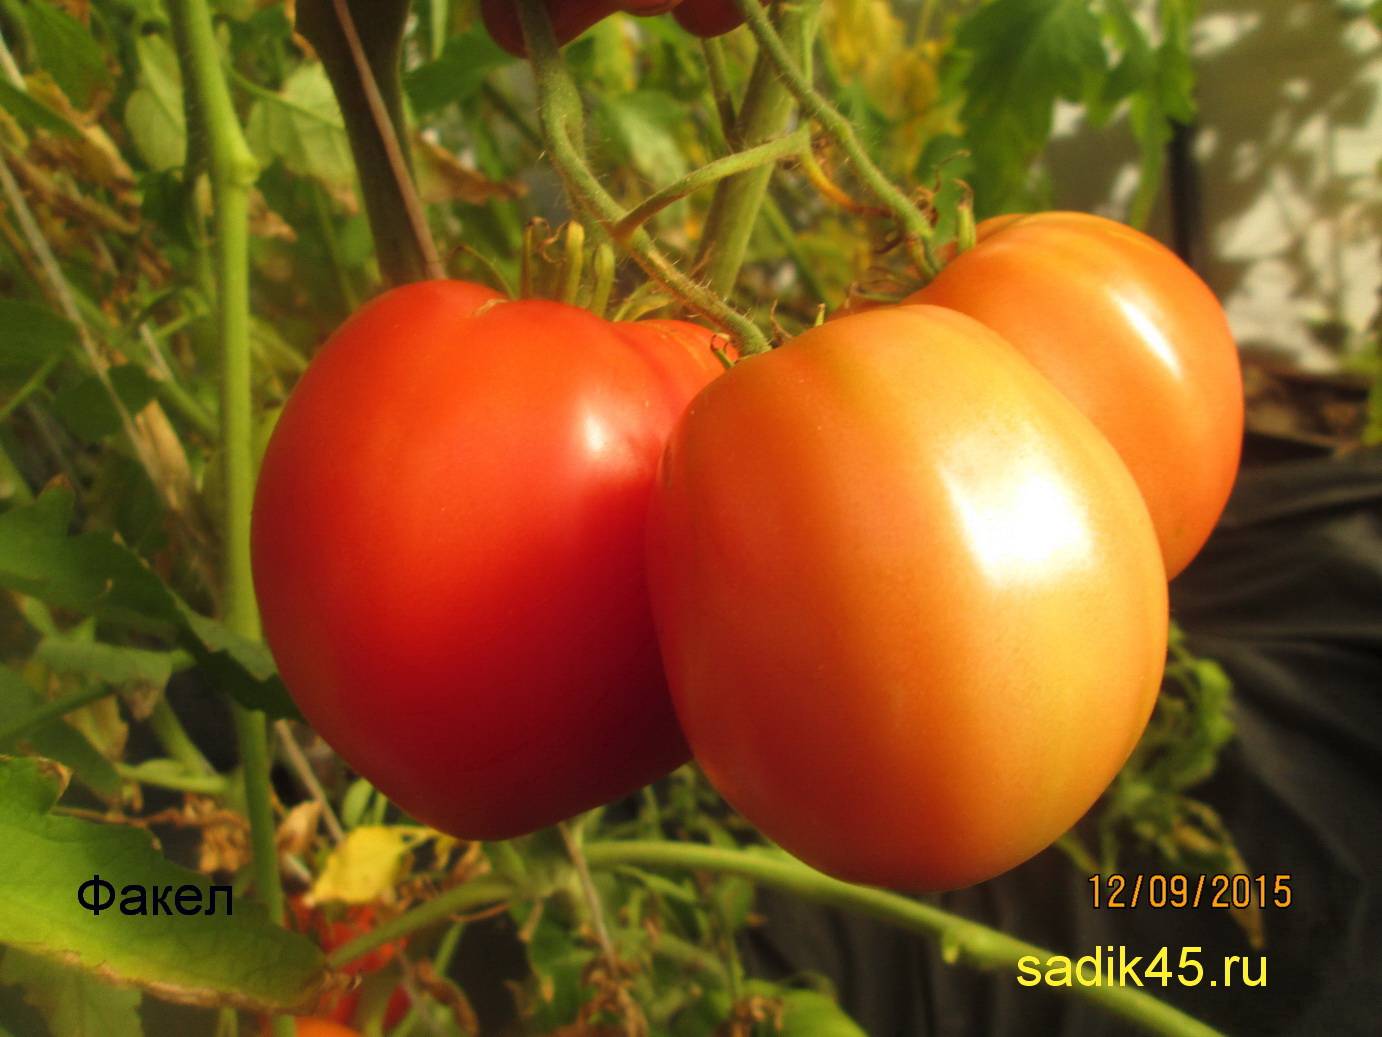 Томат факел: характеристика и описание сорта с фото, урожайность помидора, отзывы